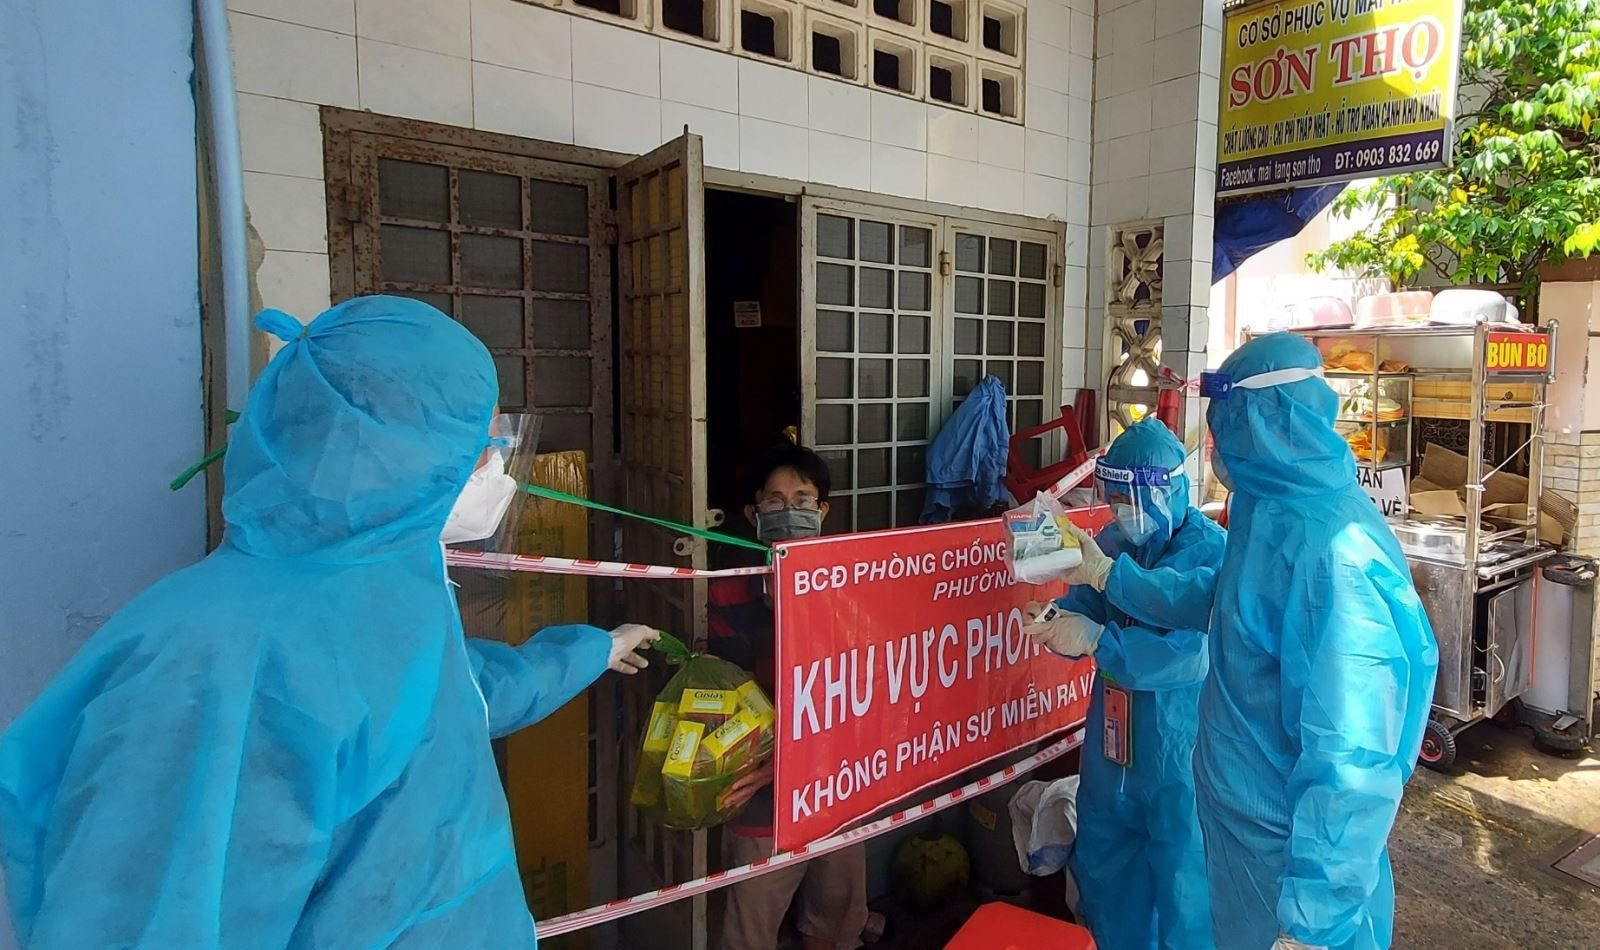 Sáng 28/3: Hơn 5,35 triệu ca COVID-19 ở Việt Nam khỏi; Tiếp tục tìm kiếm nhà tài trợ để có thêm 8-10 triệu liều vaccine tiêm đủ 2 liều cho trẻ từ 5-11 tuổi - Ảnh 1.